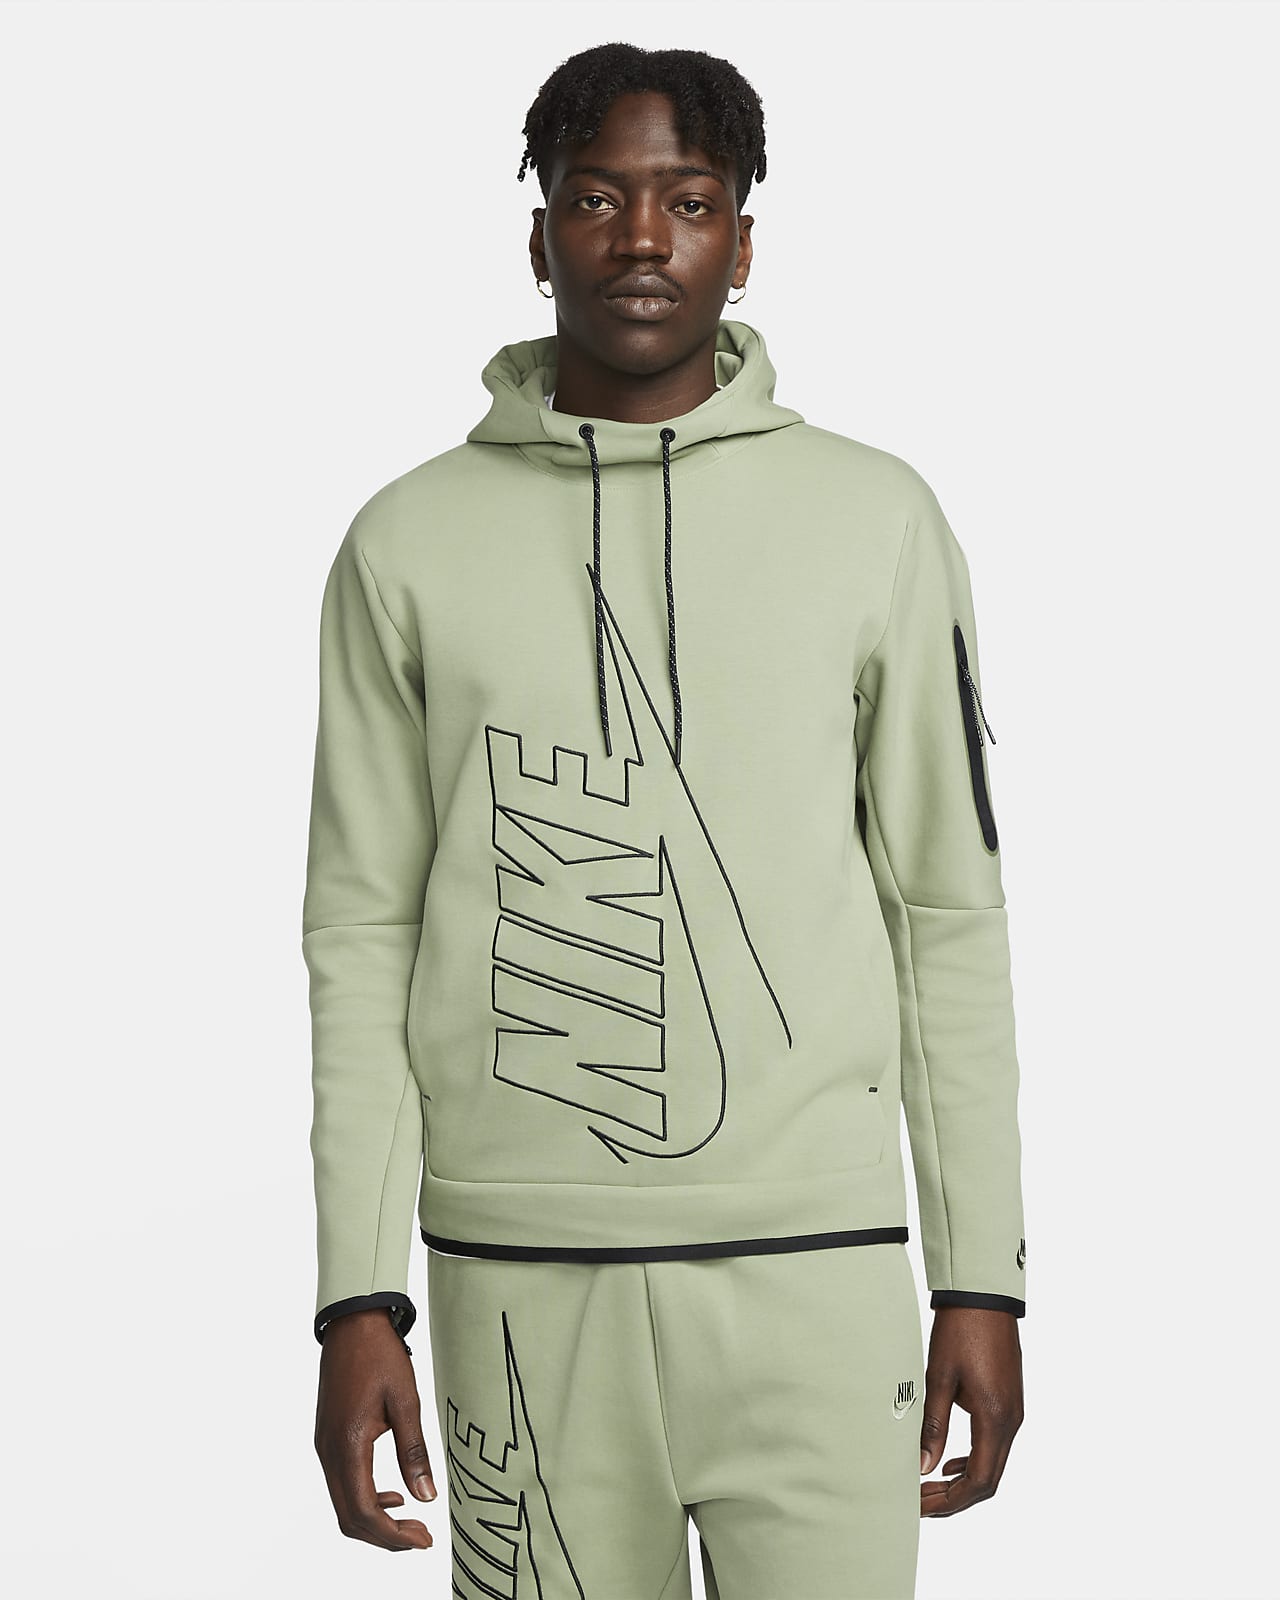 Una noche dentro de poco facil de manejar Nike Tech Fleece Men's Pullover Graphic Hoodie. Nike LU